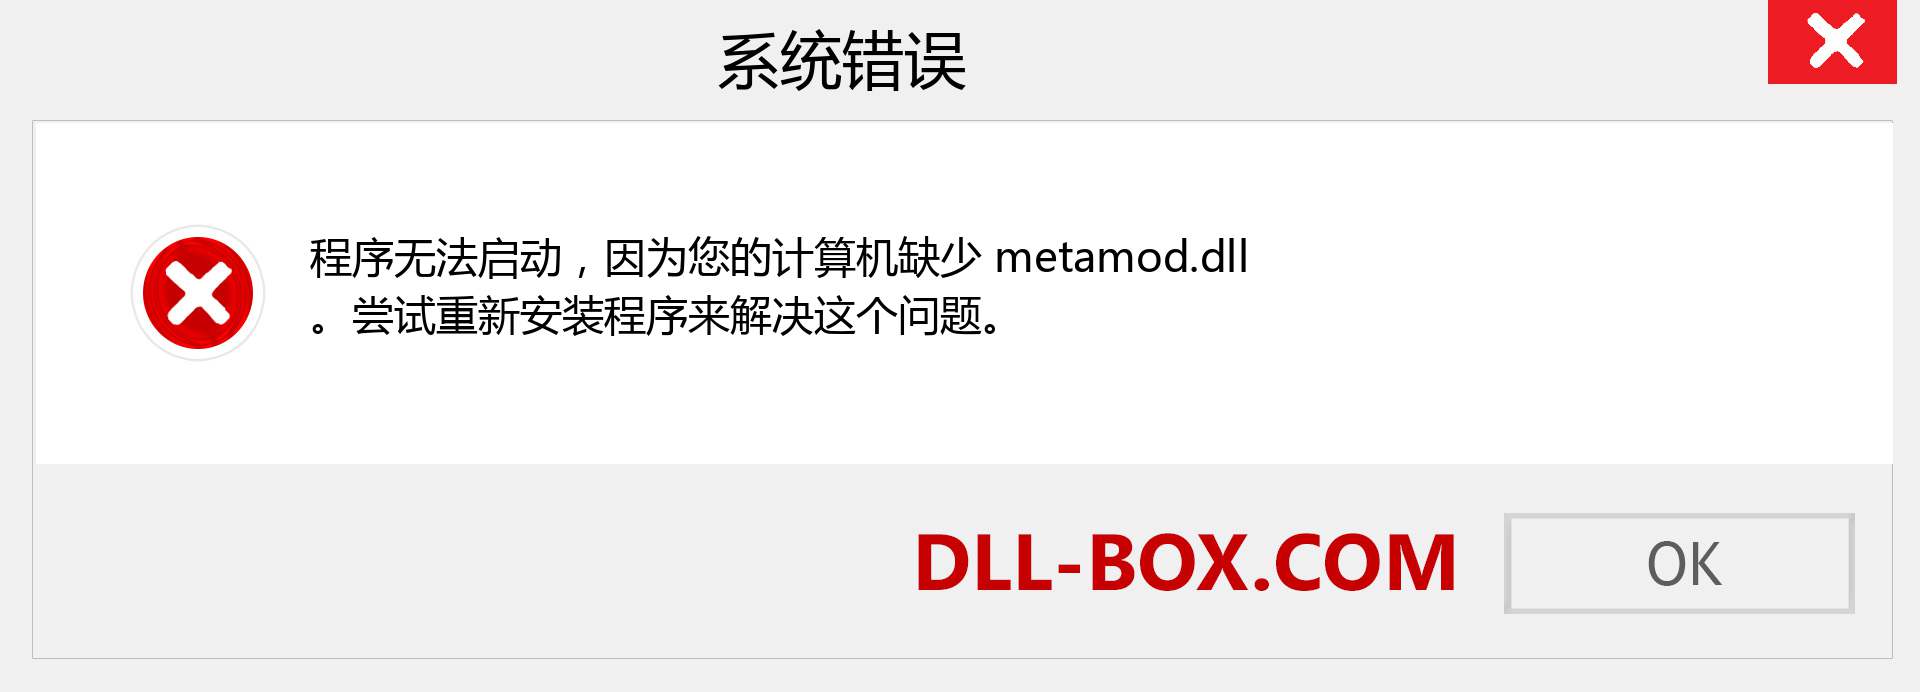 metamod.dll 文件丢失？。 适用于 Windows 7、8、10 的下载 - 修复 Windows、照片、图像上的 metamod dll 丢失错误